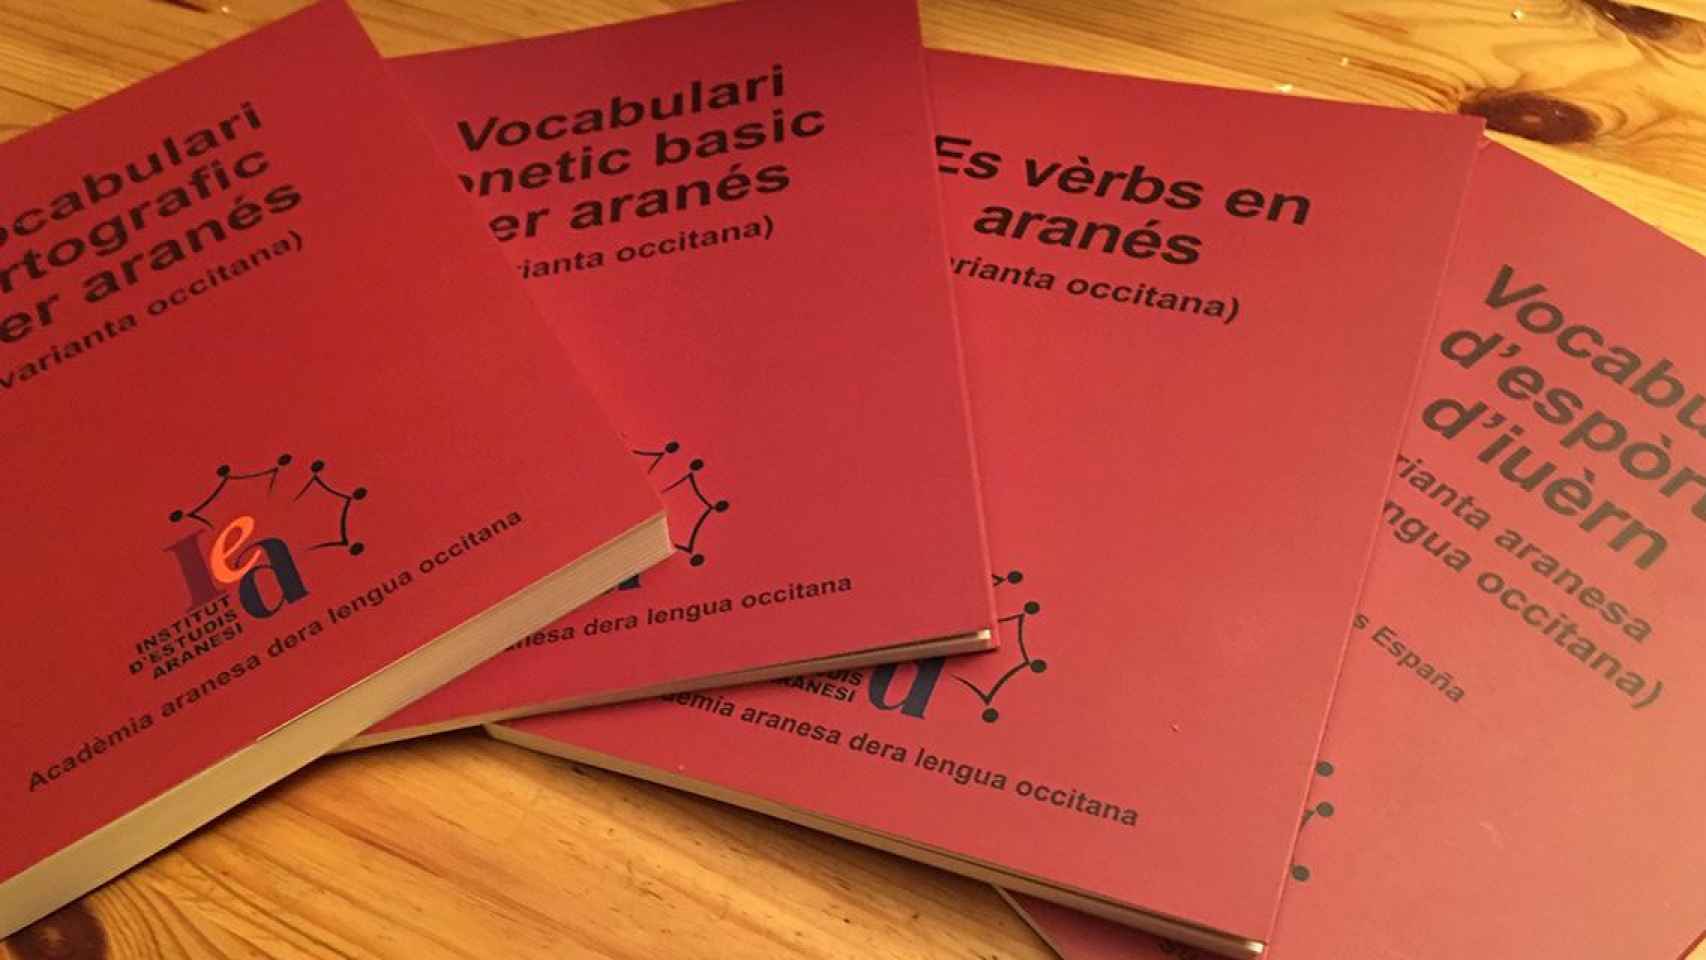 Inmersión en Aran. Libros de aprendizaje del aranés, reconocida como una variante del occitano, en una imagen de archivo / CONSELH GENERAU D'ARAN